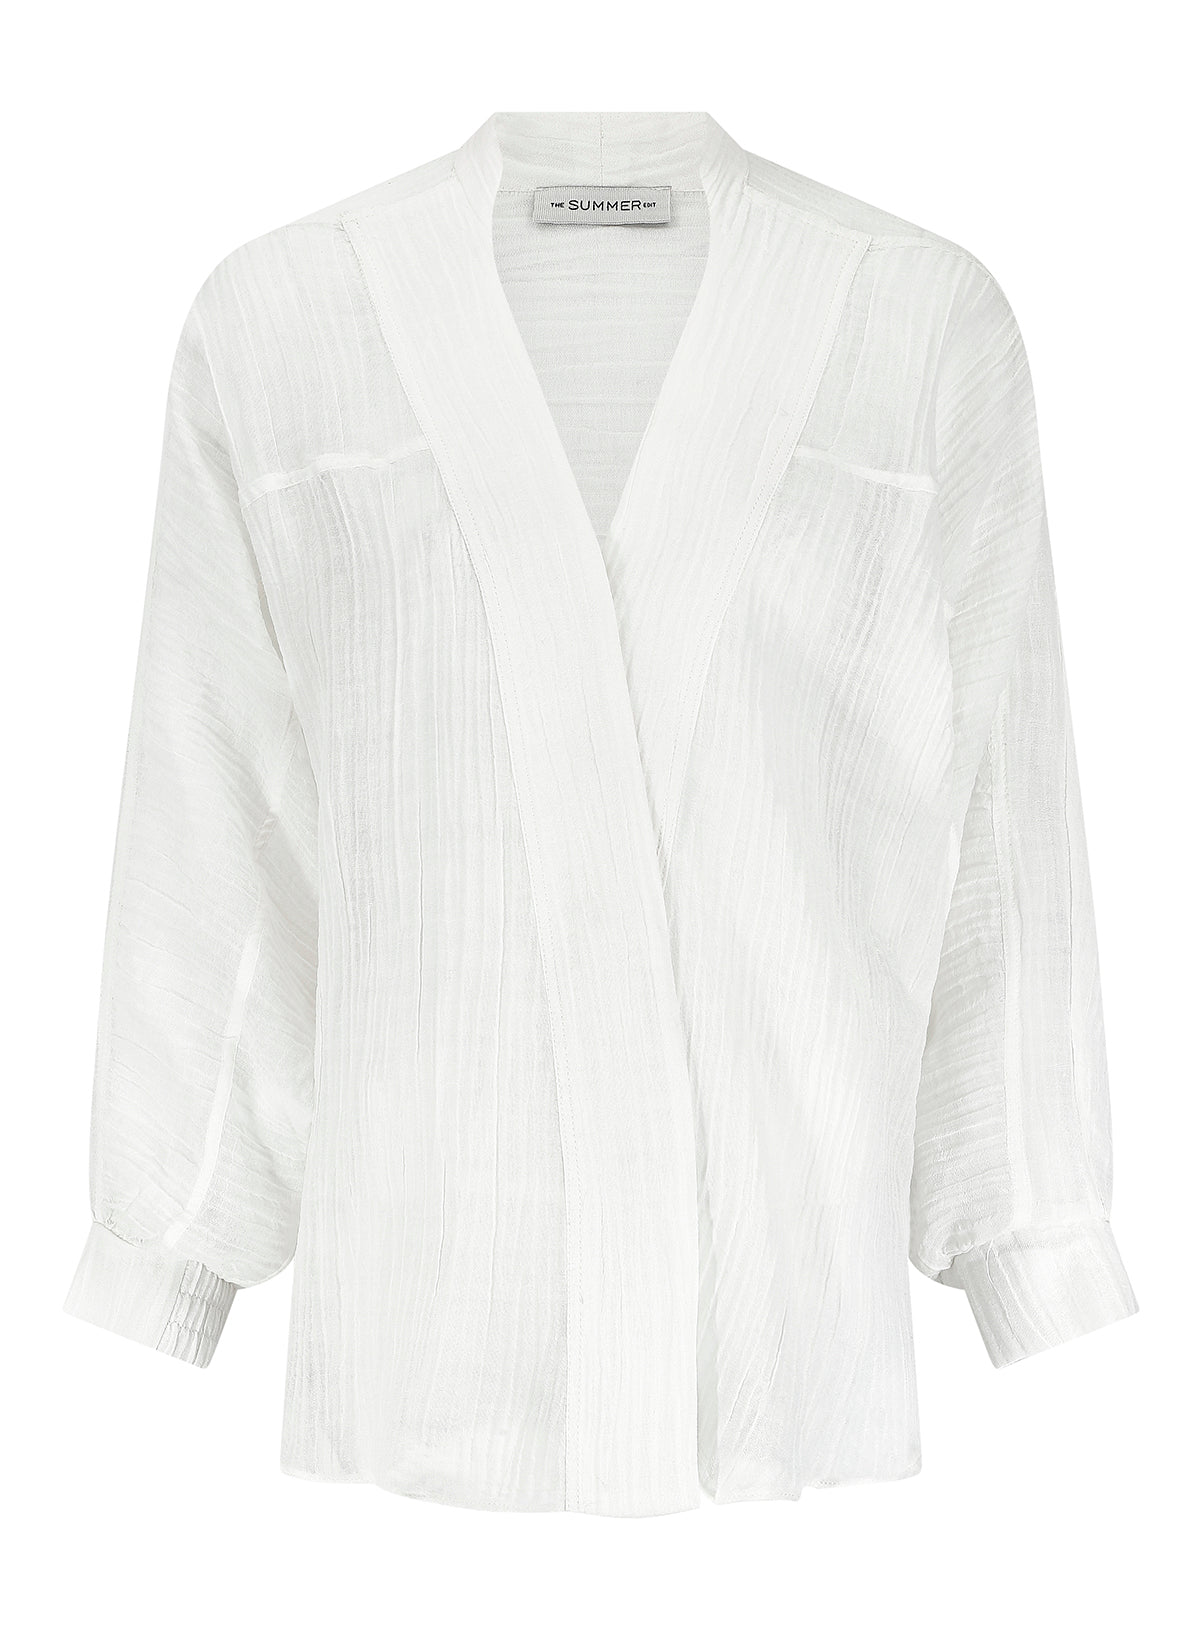 MARGOT - Ivory Crinkle Linen Sports Shirt